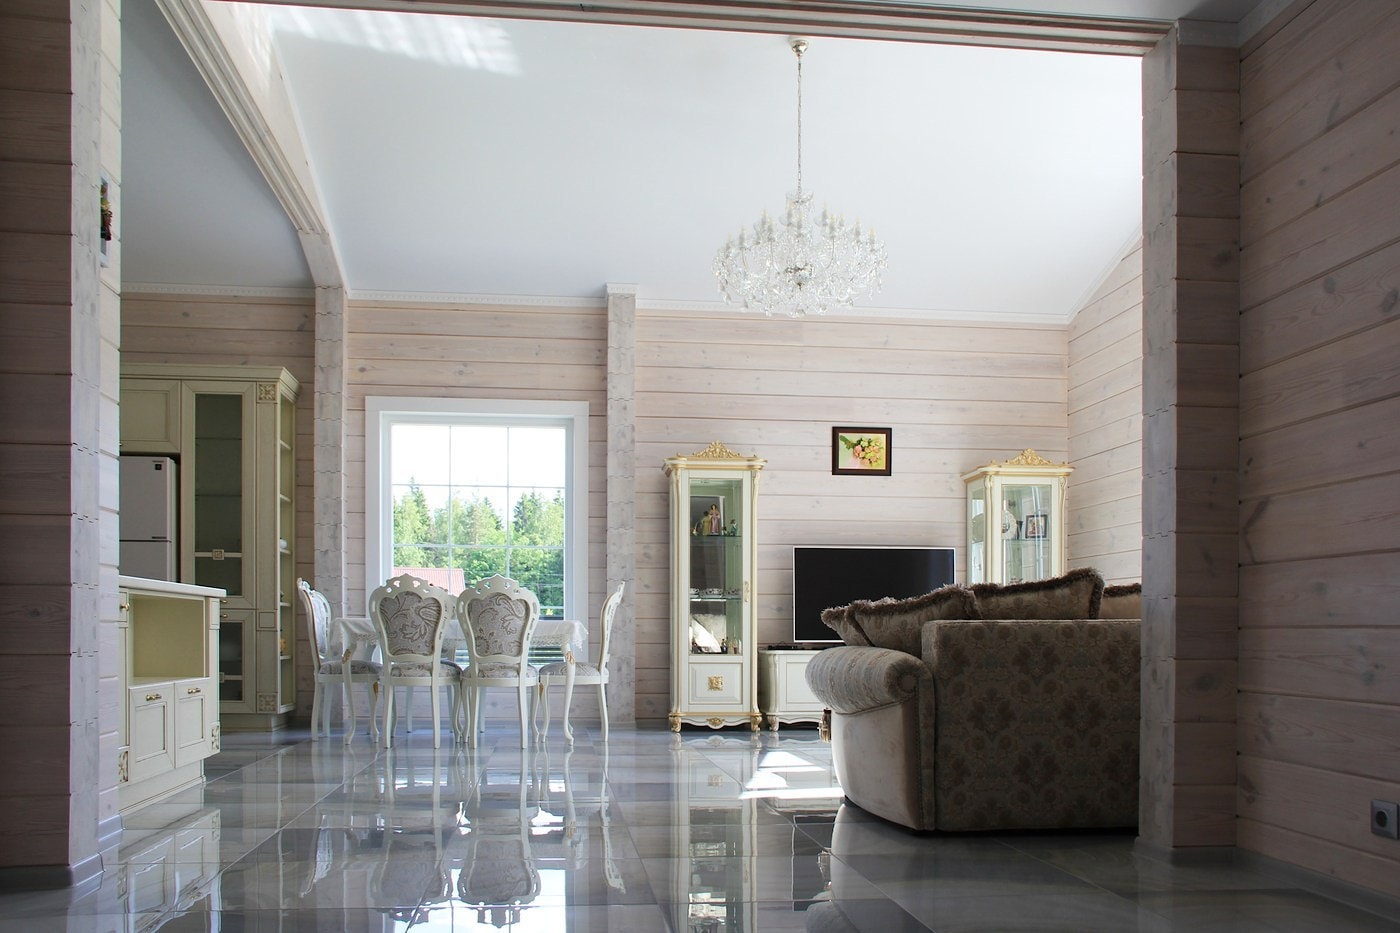 Casa in legno lamellare in stile classico 130 m2